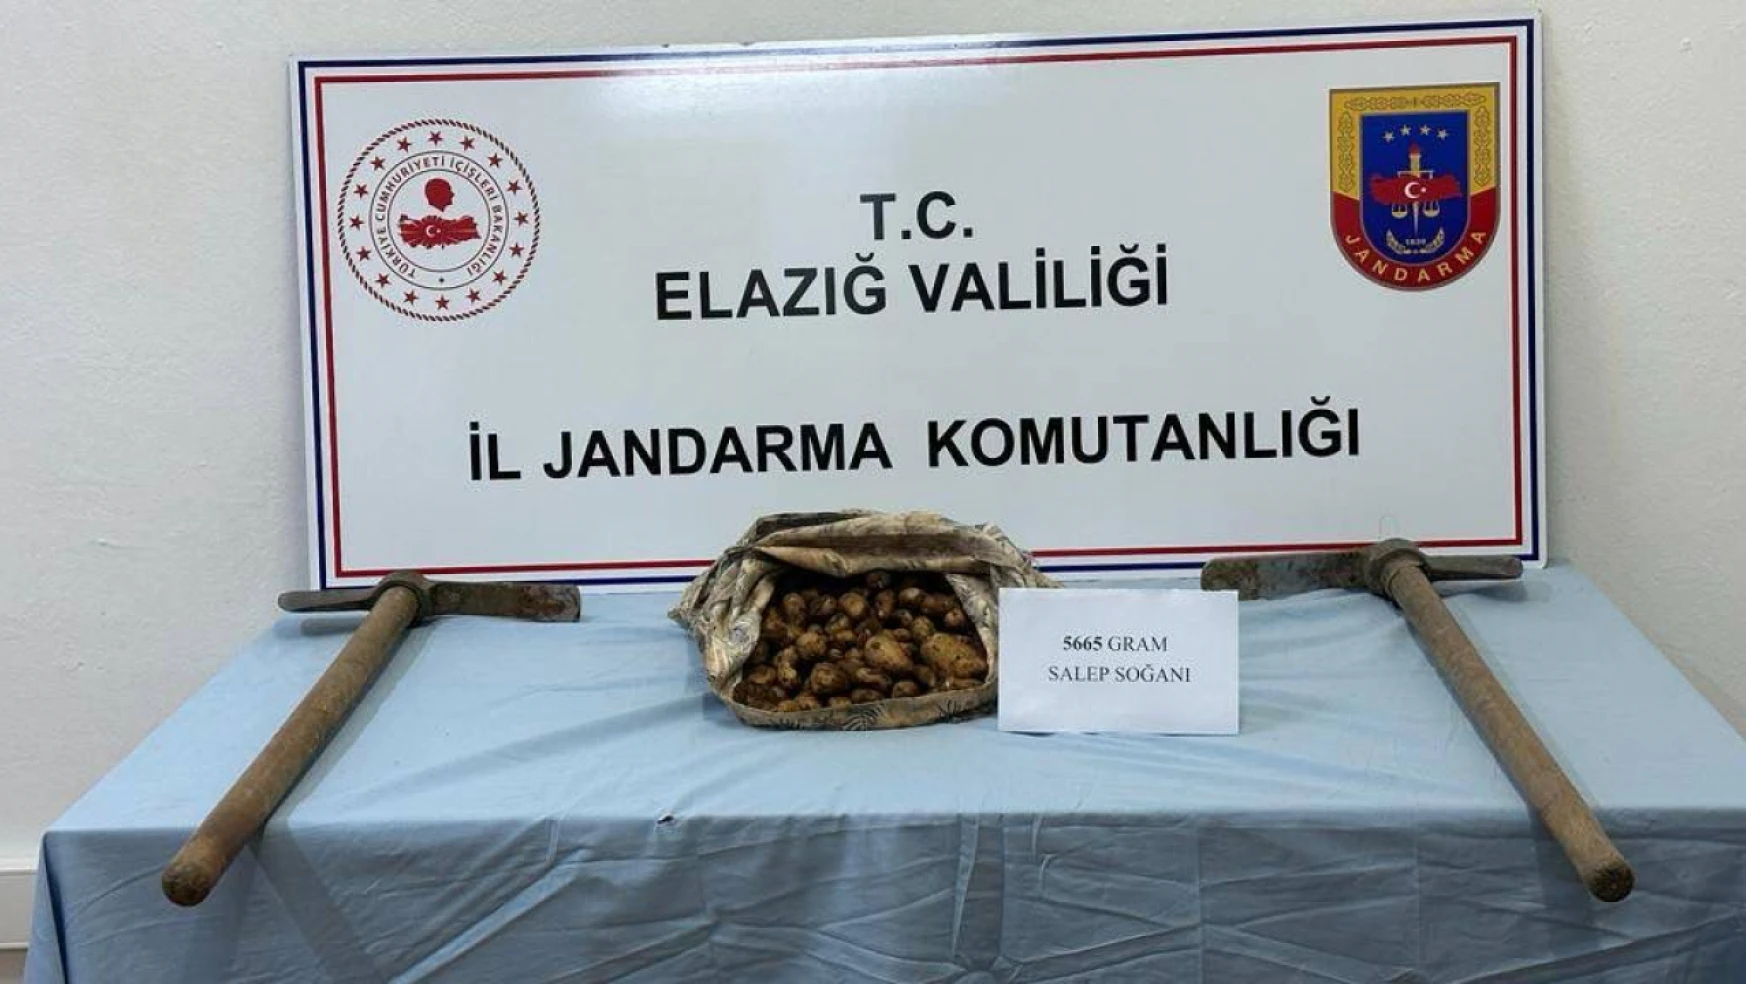 Arıcak'ta Bir Kişi Kaçak Salep Soğanı Toplarken Yakalandı